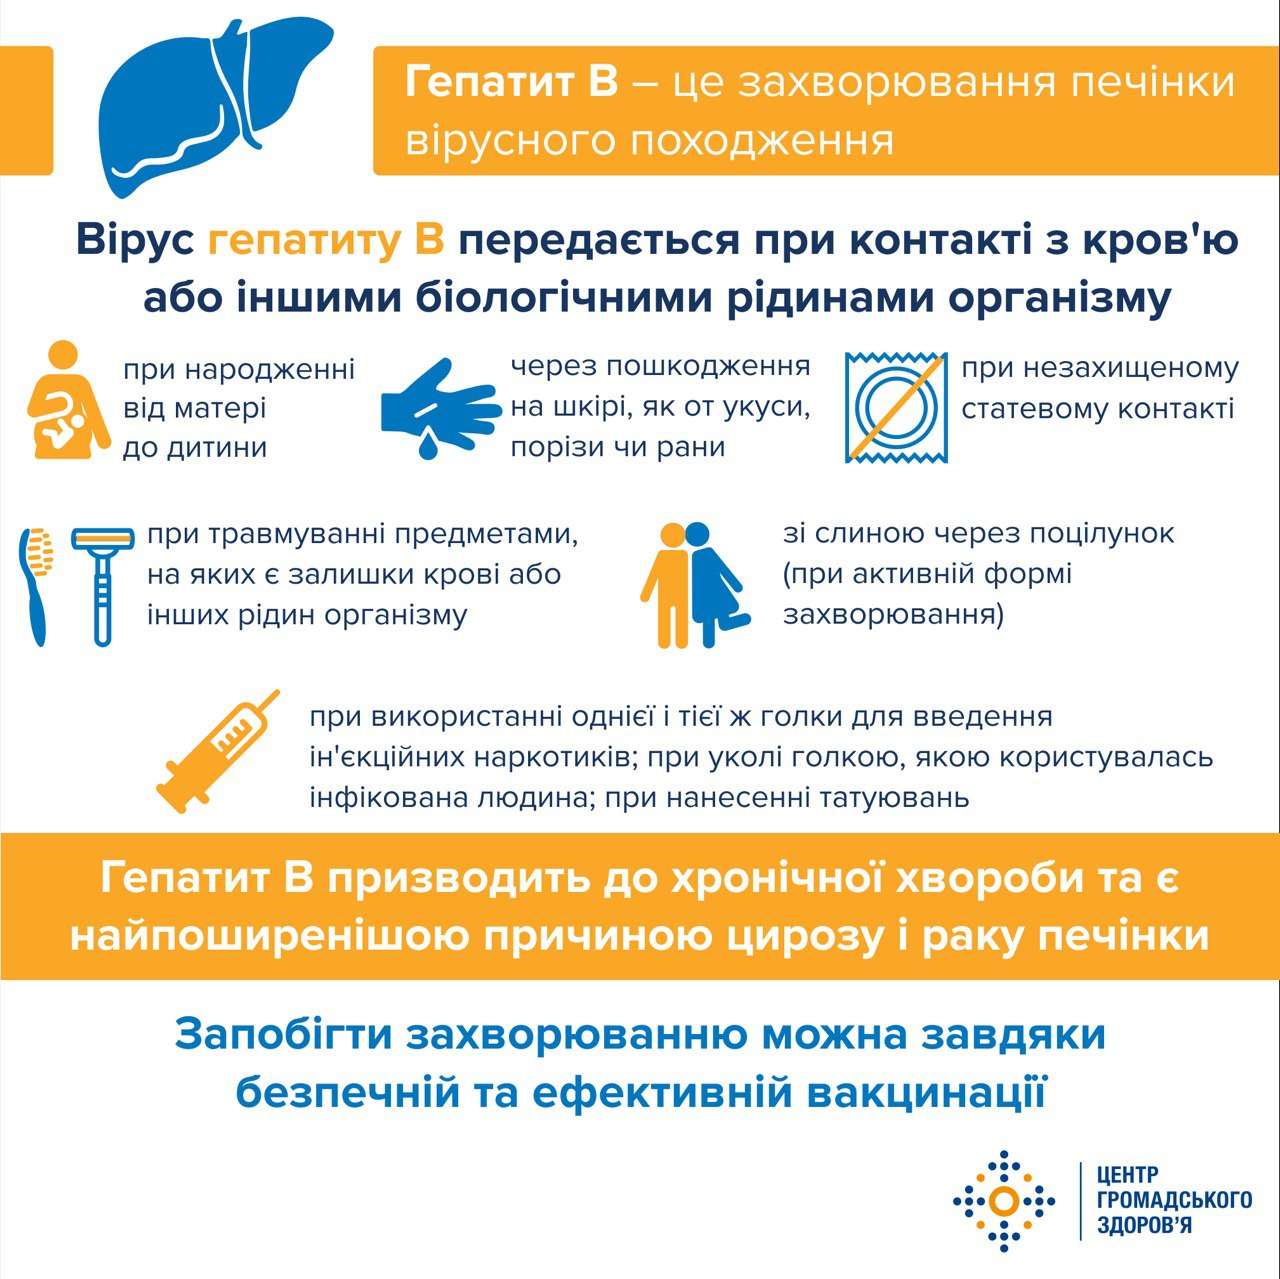 В Україні майже 2 мільйона інфікованих гепатитом